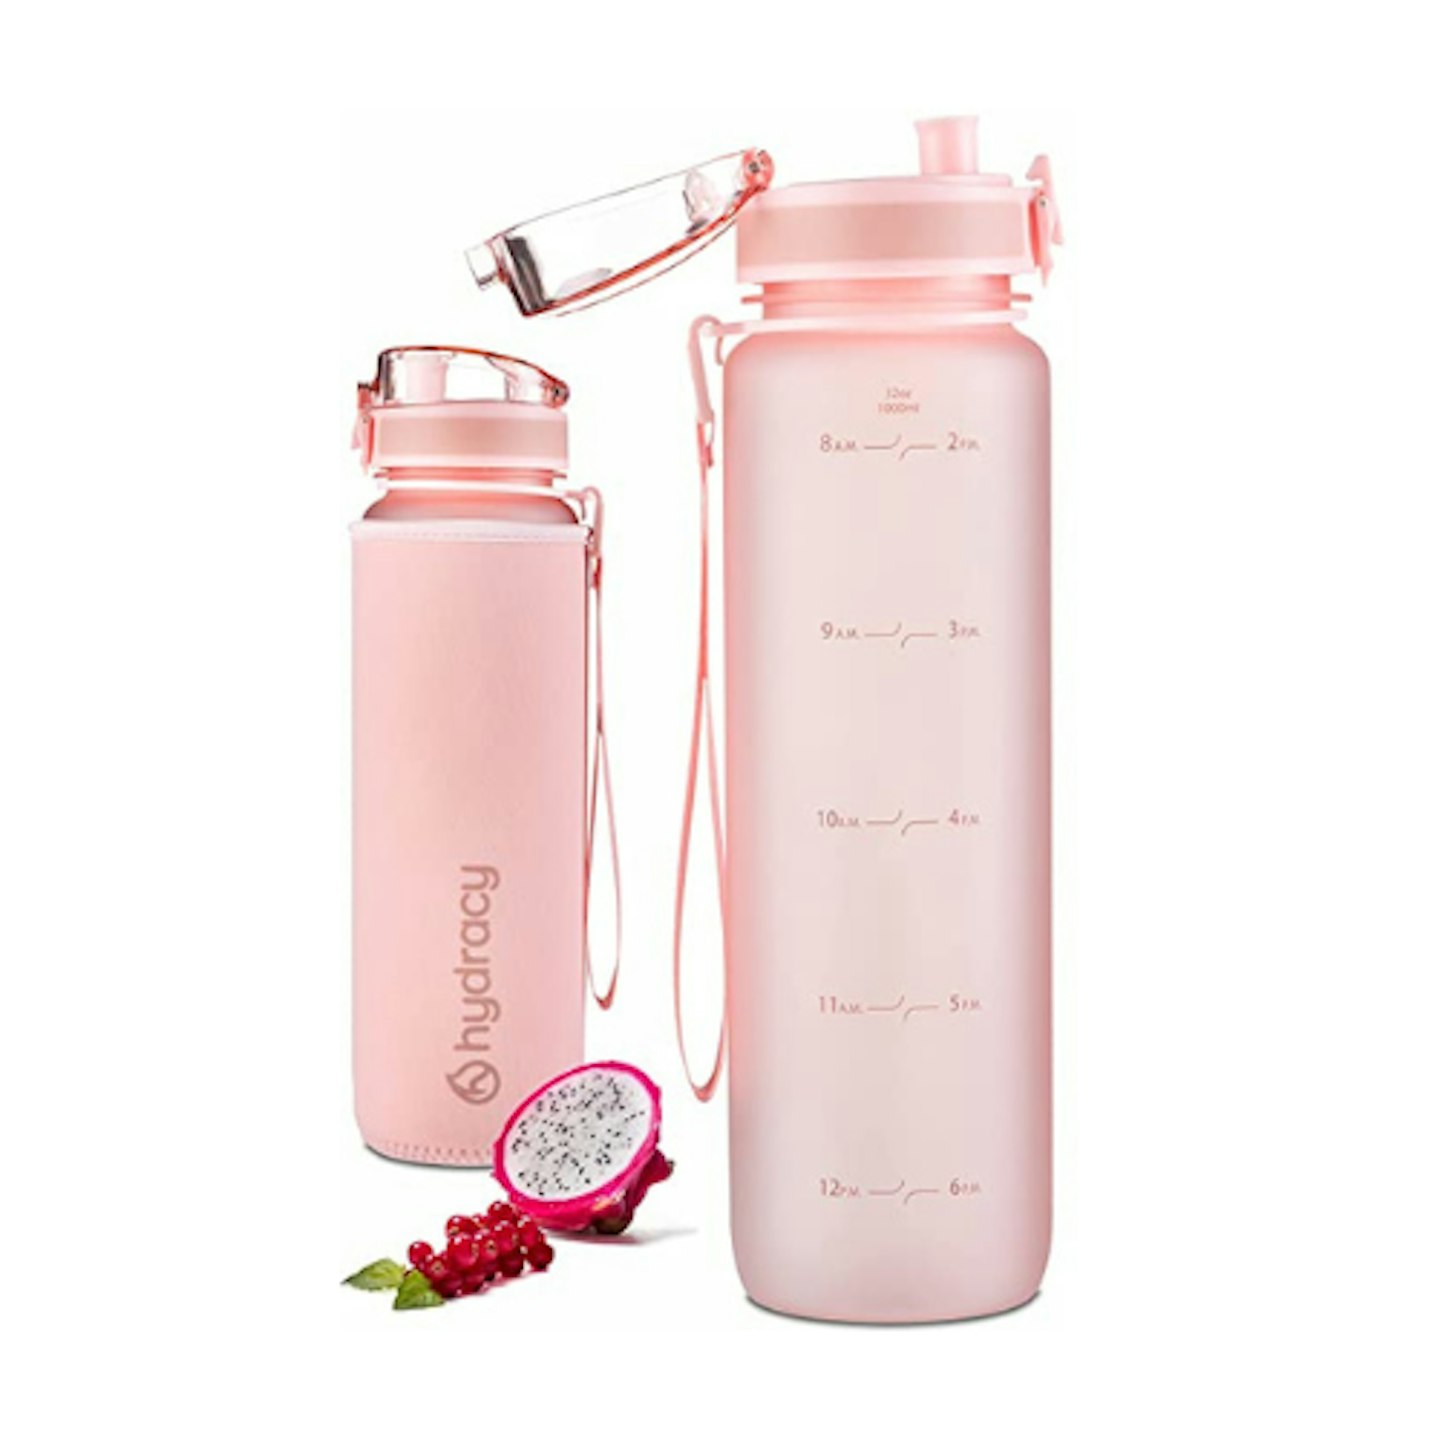 Hydracy Pink Water Bottle